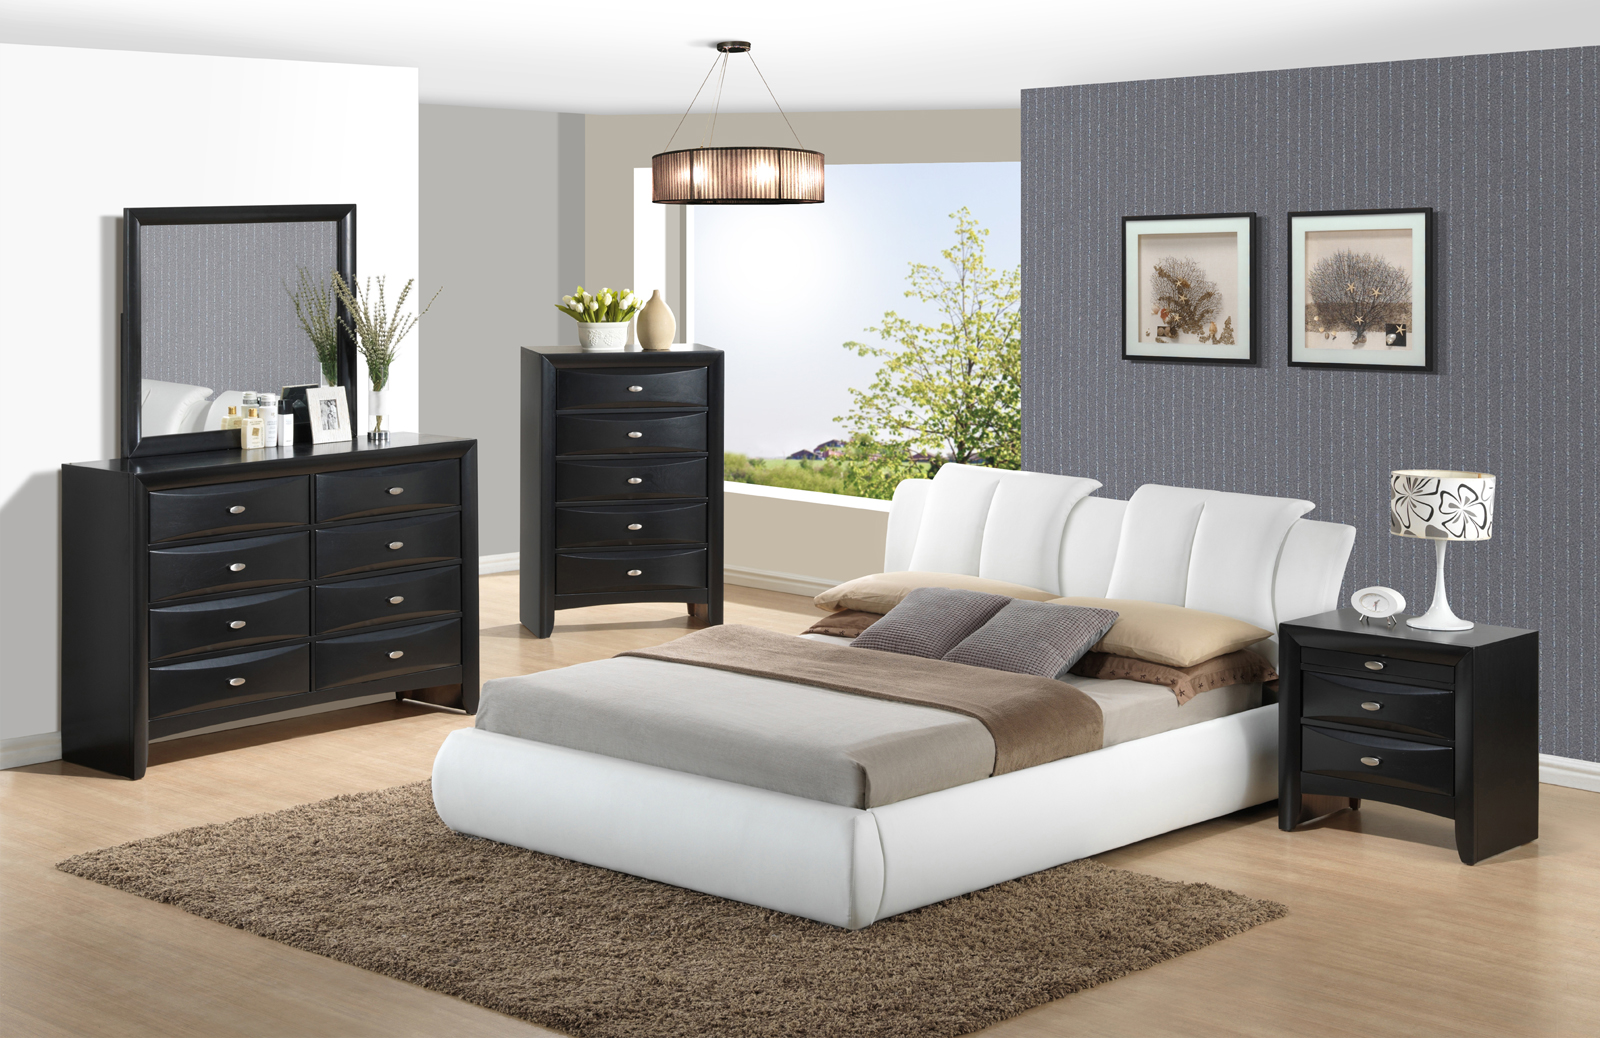 linda barker bedroom furniture